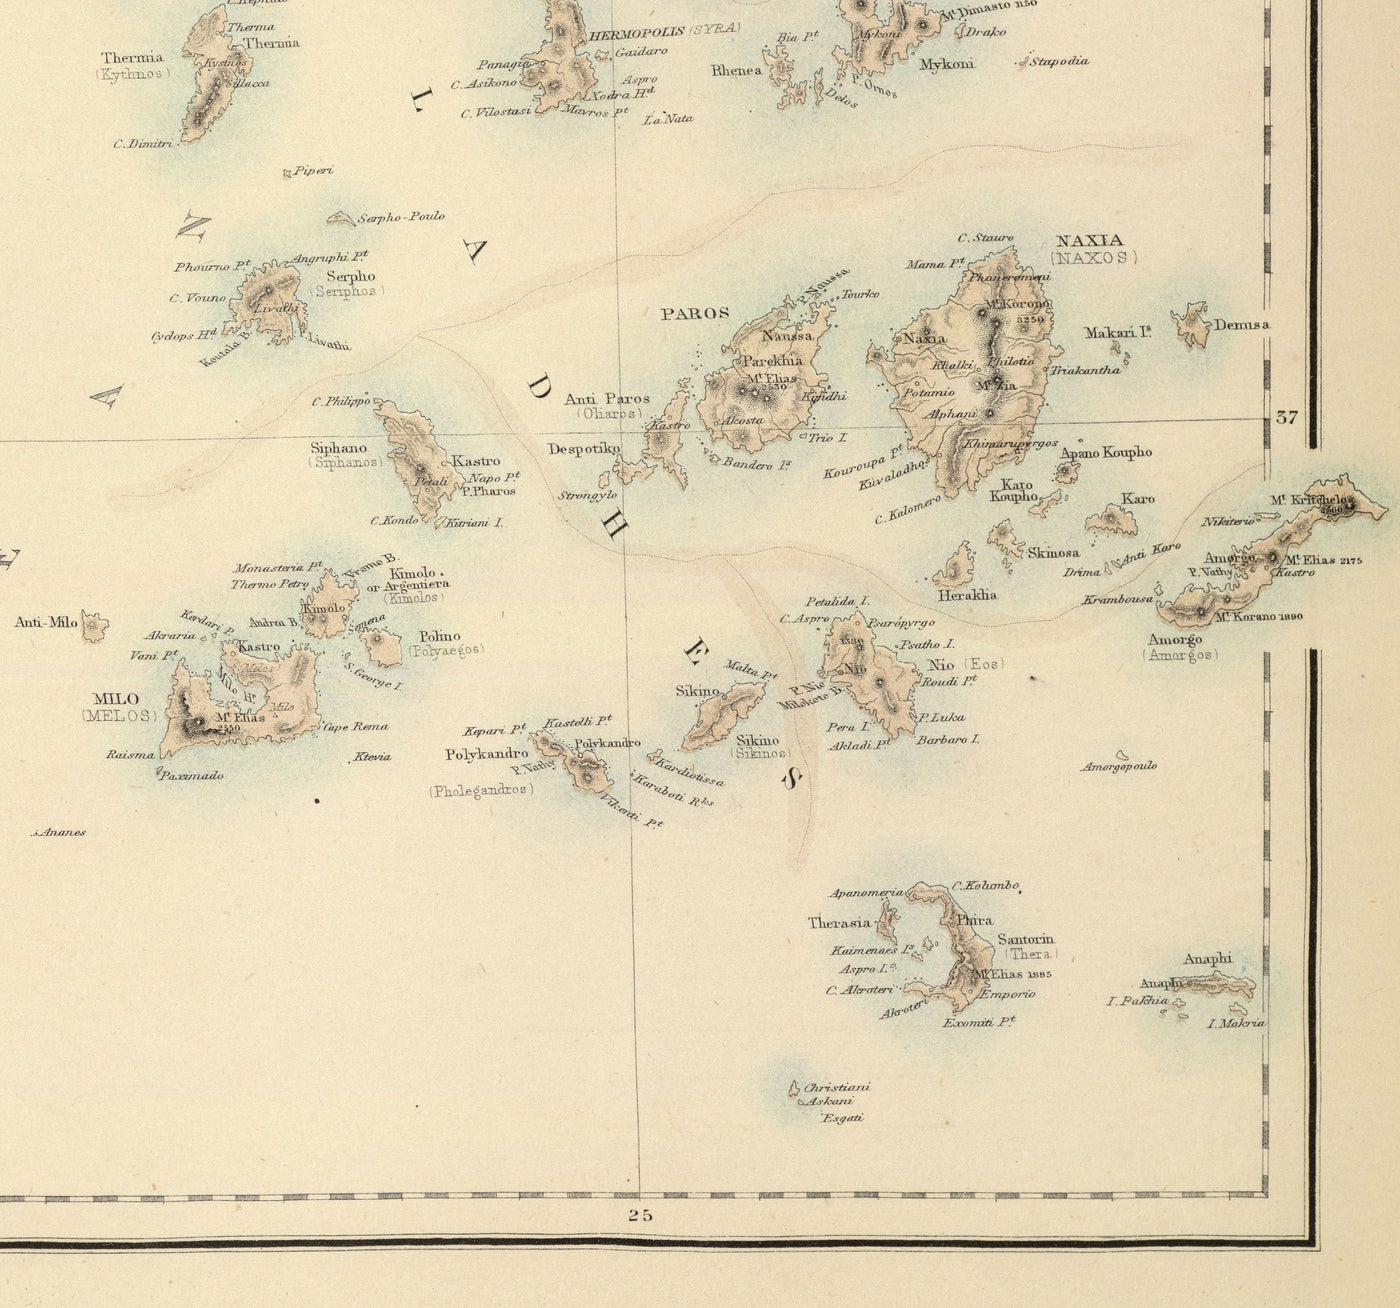 Ancienne carte de la Grèce en 1872 par Archibald Fullarton - Athènes, Le Pirée, Kalamata, Patras, Nauplie